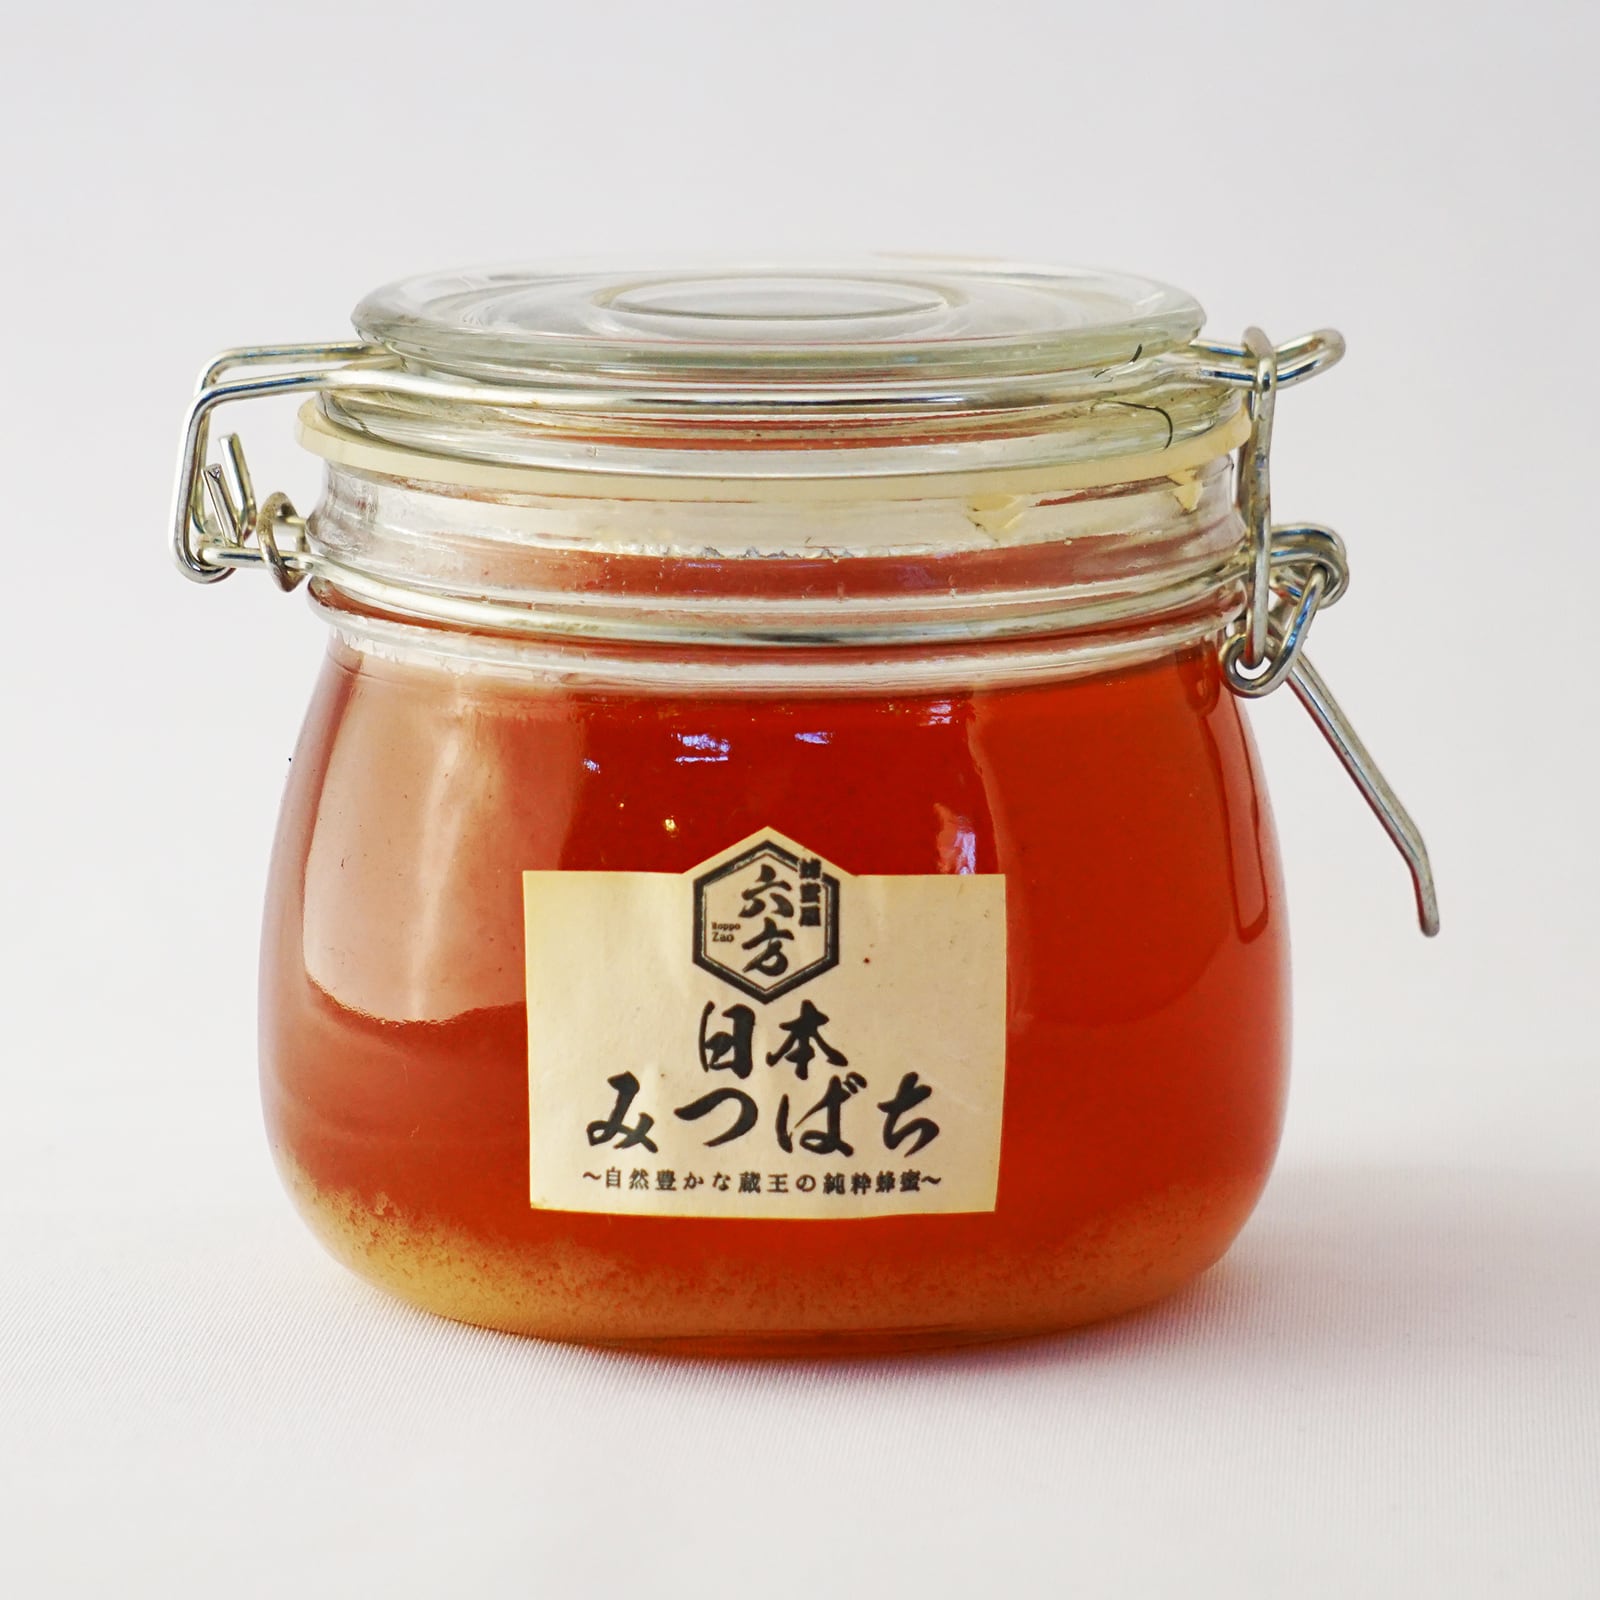 日本ミツバチ 国産天然はちみつ100% 600g(300g✕2瓶)